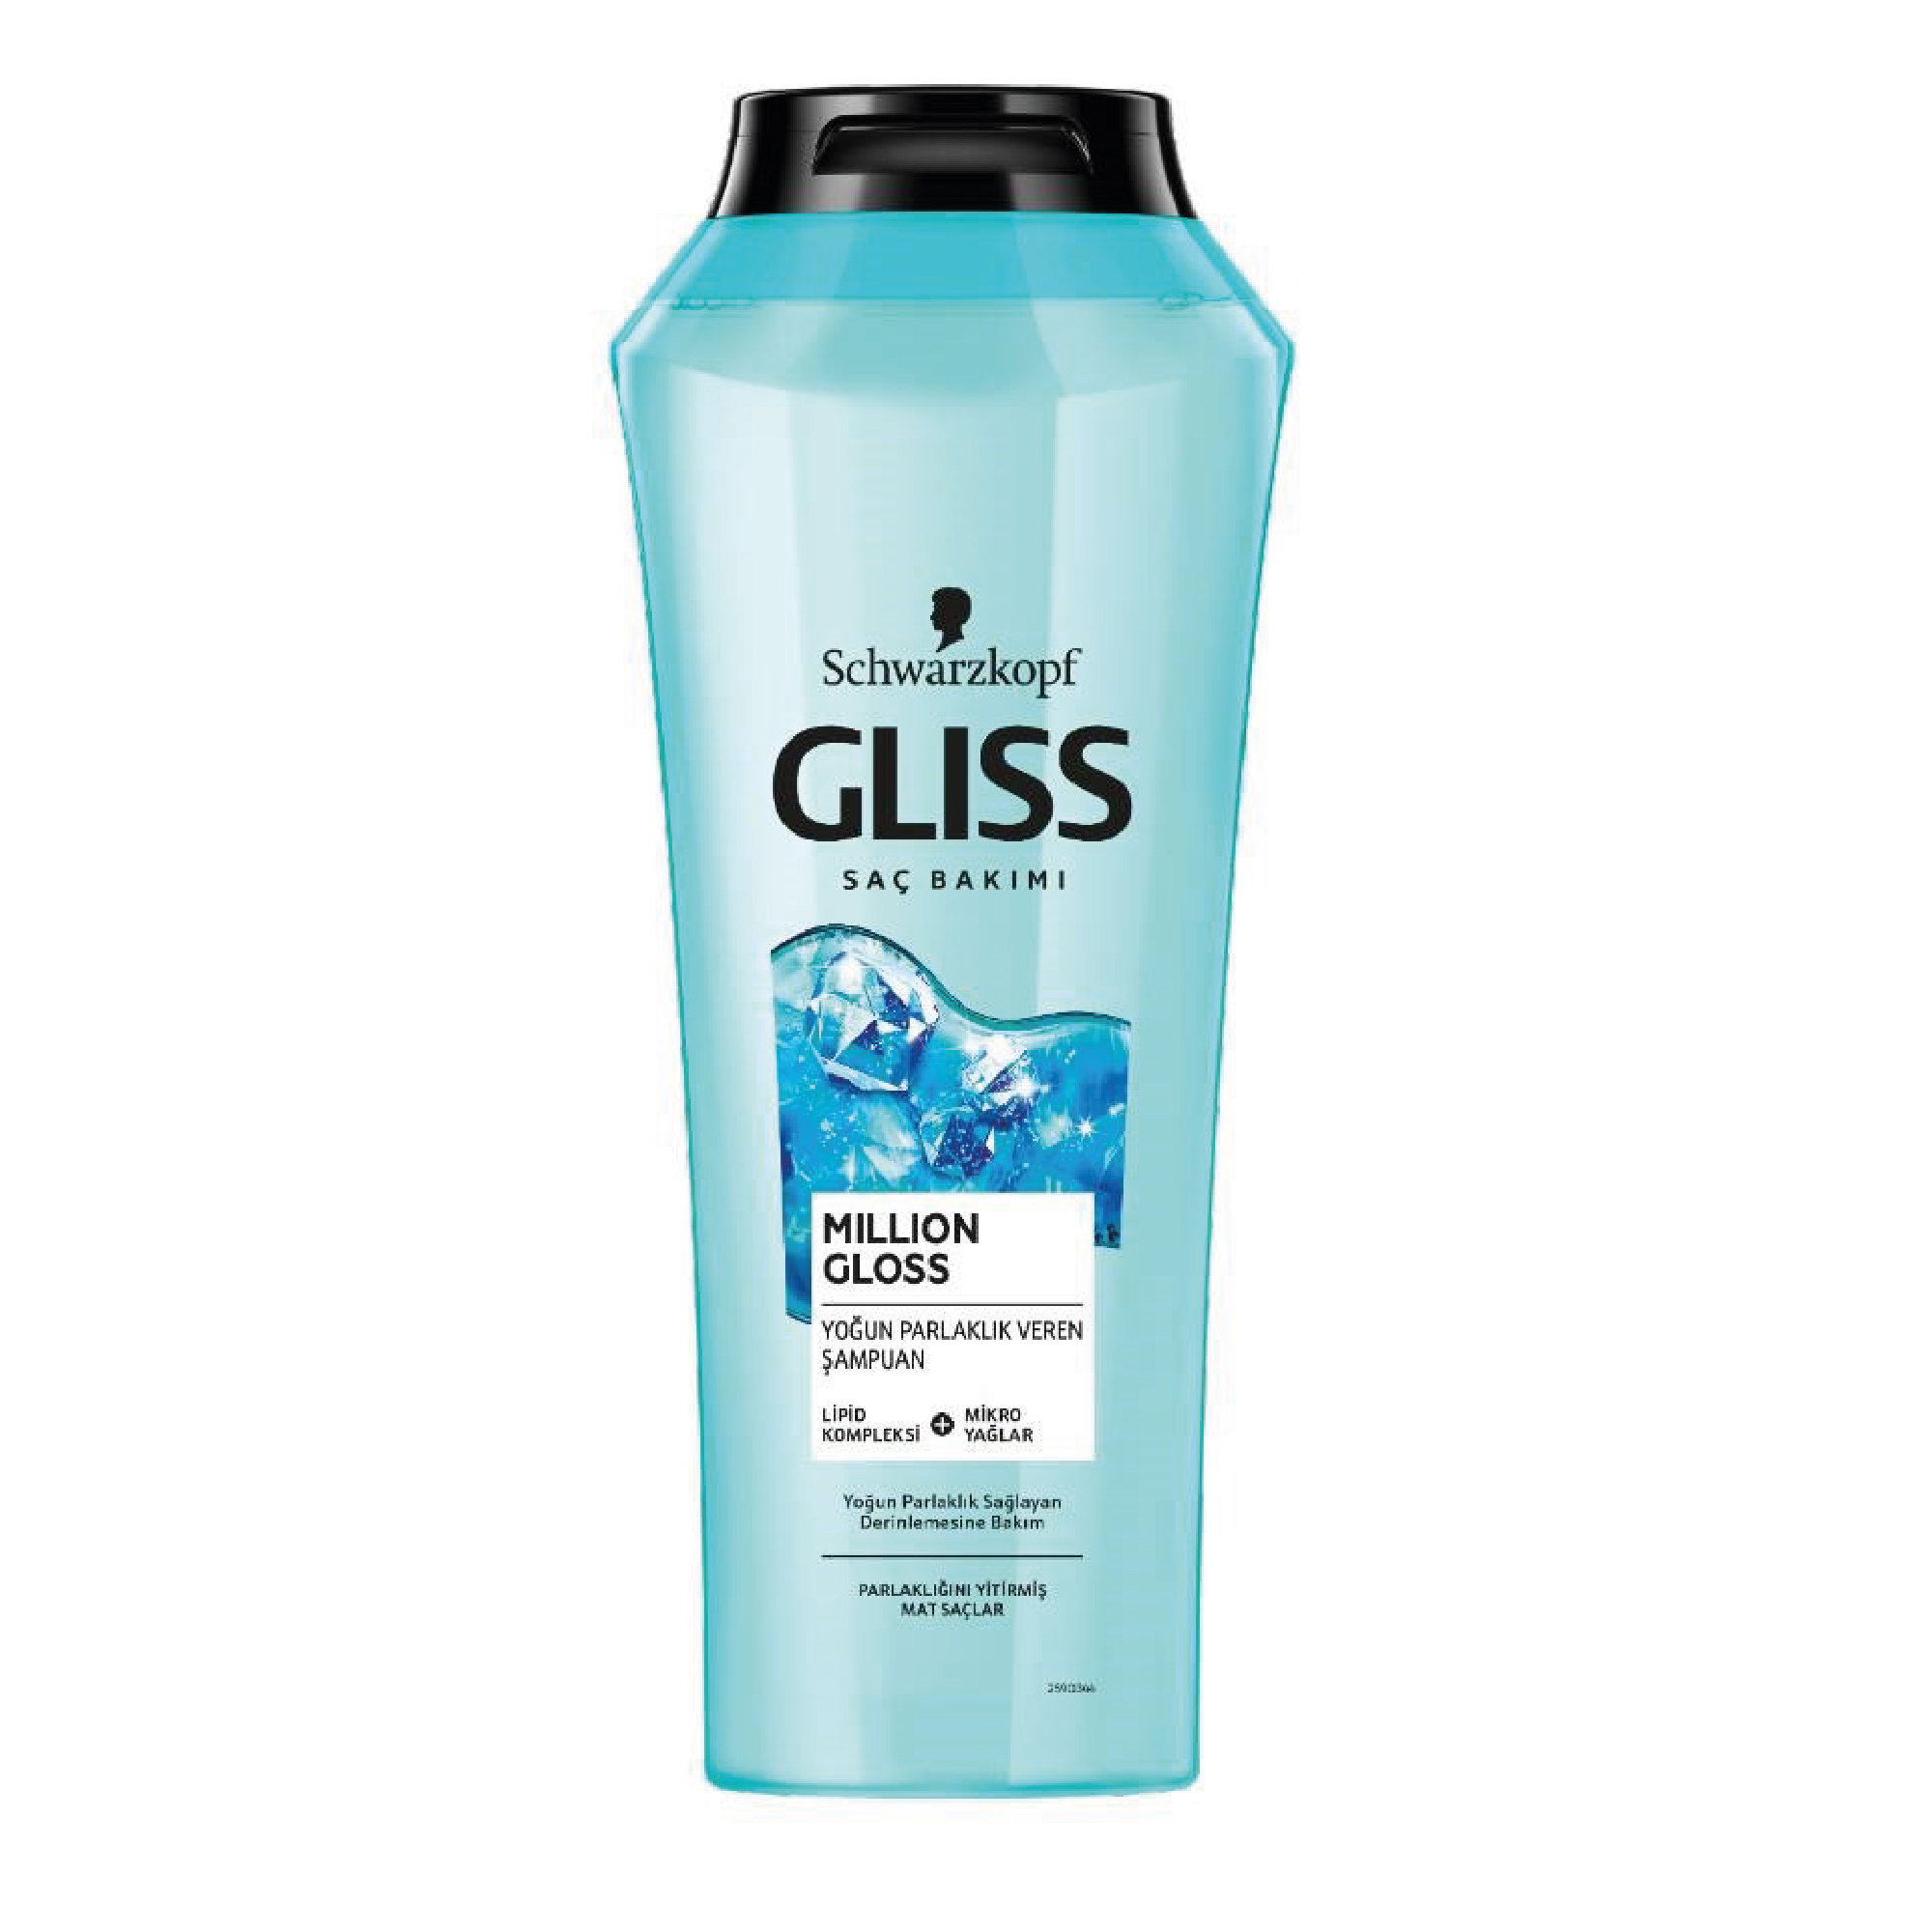 Gliss Şampuan 500ml Million Gloss Parlaklık Veren